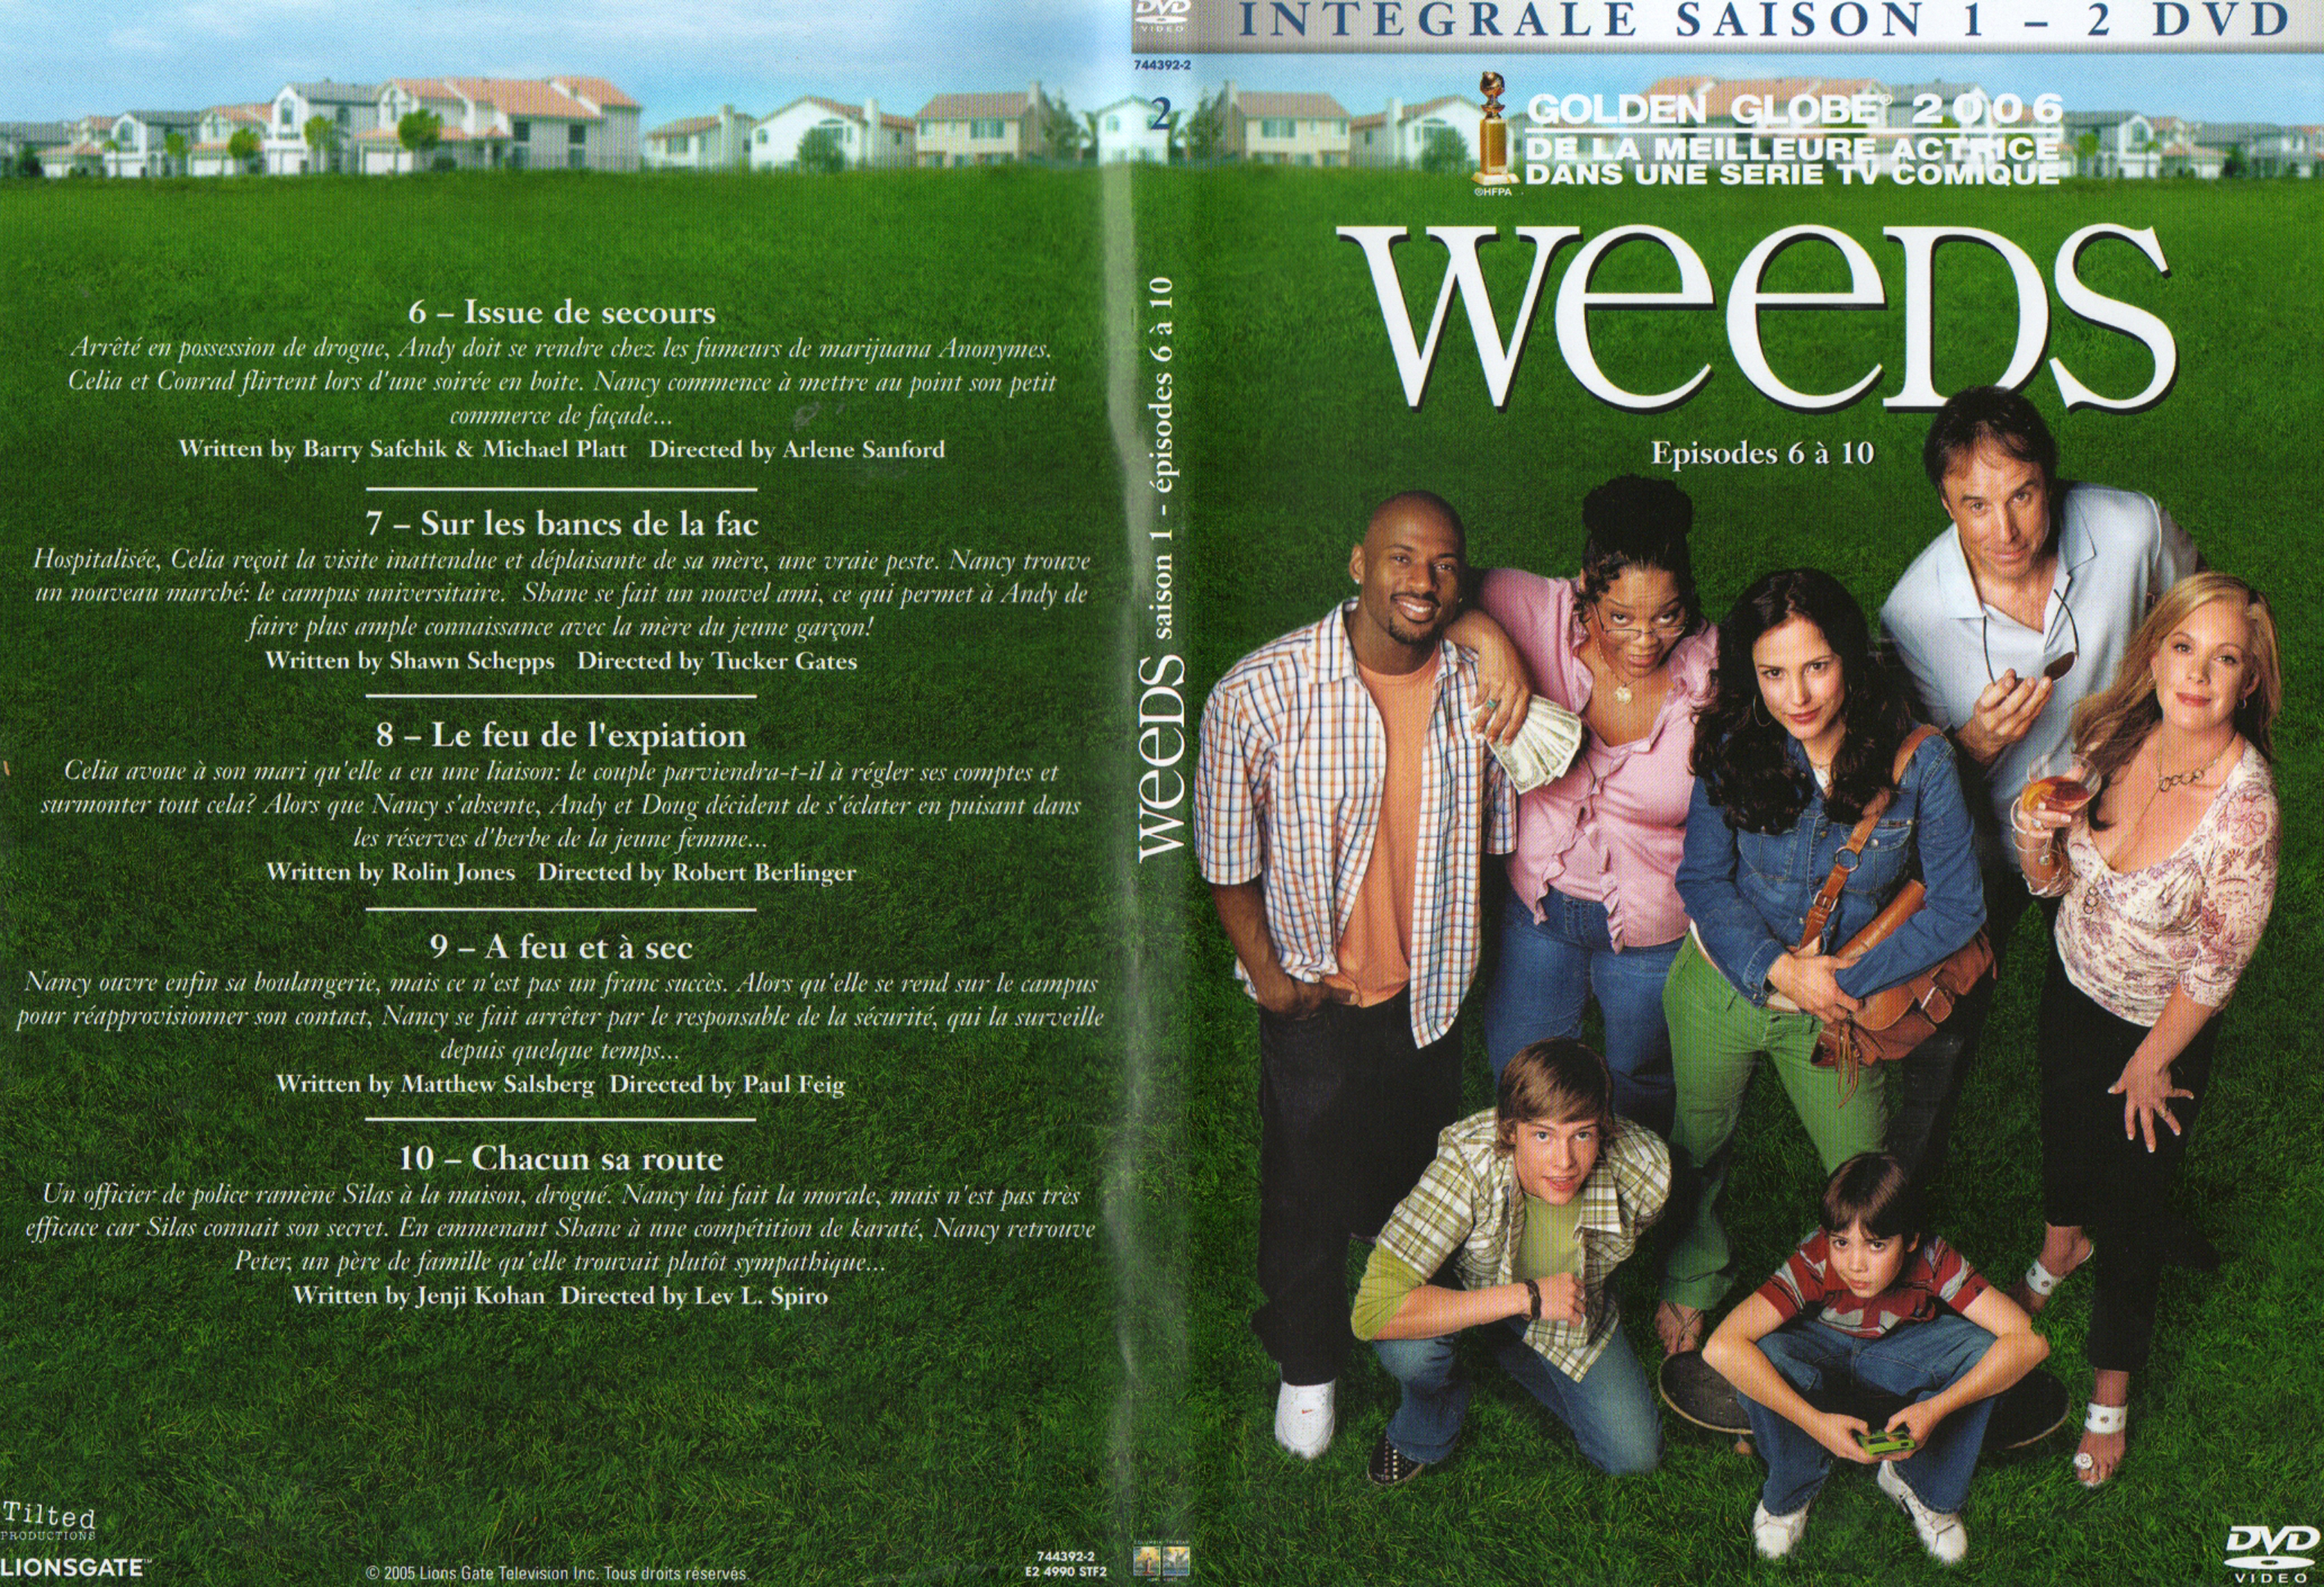 Jaquette DVD Weeds saison 1 DVD 2